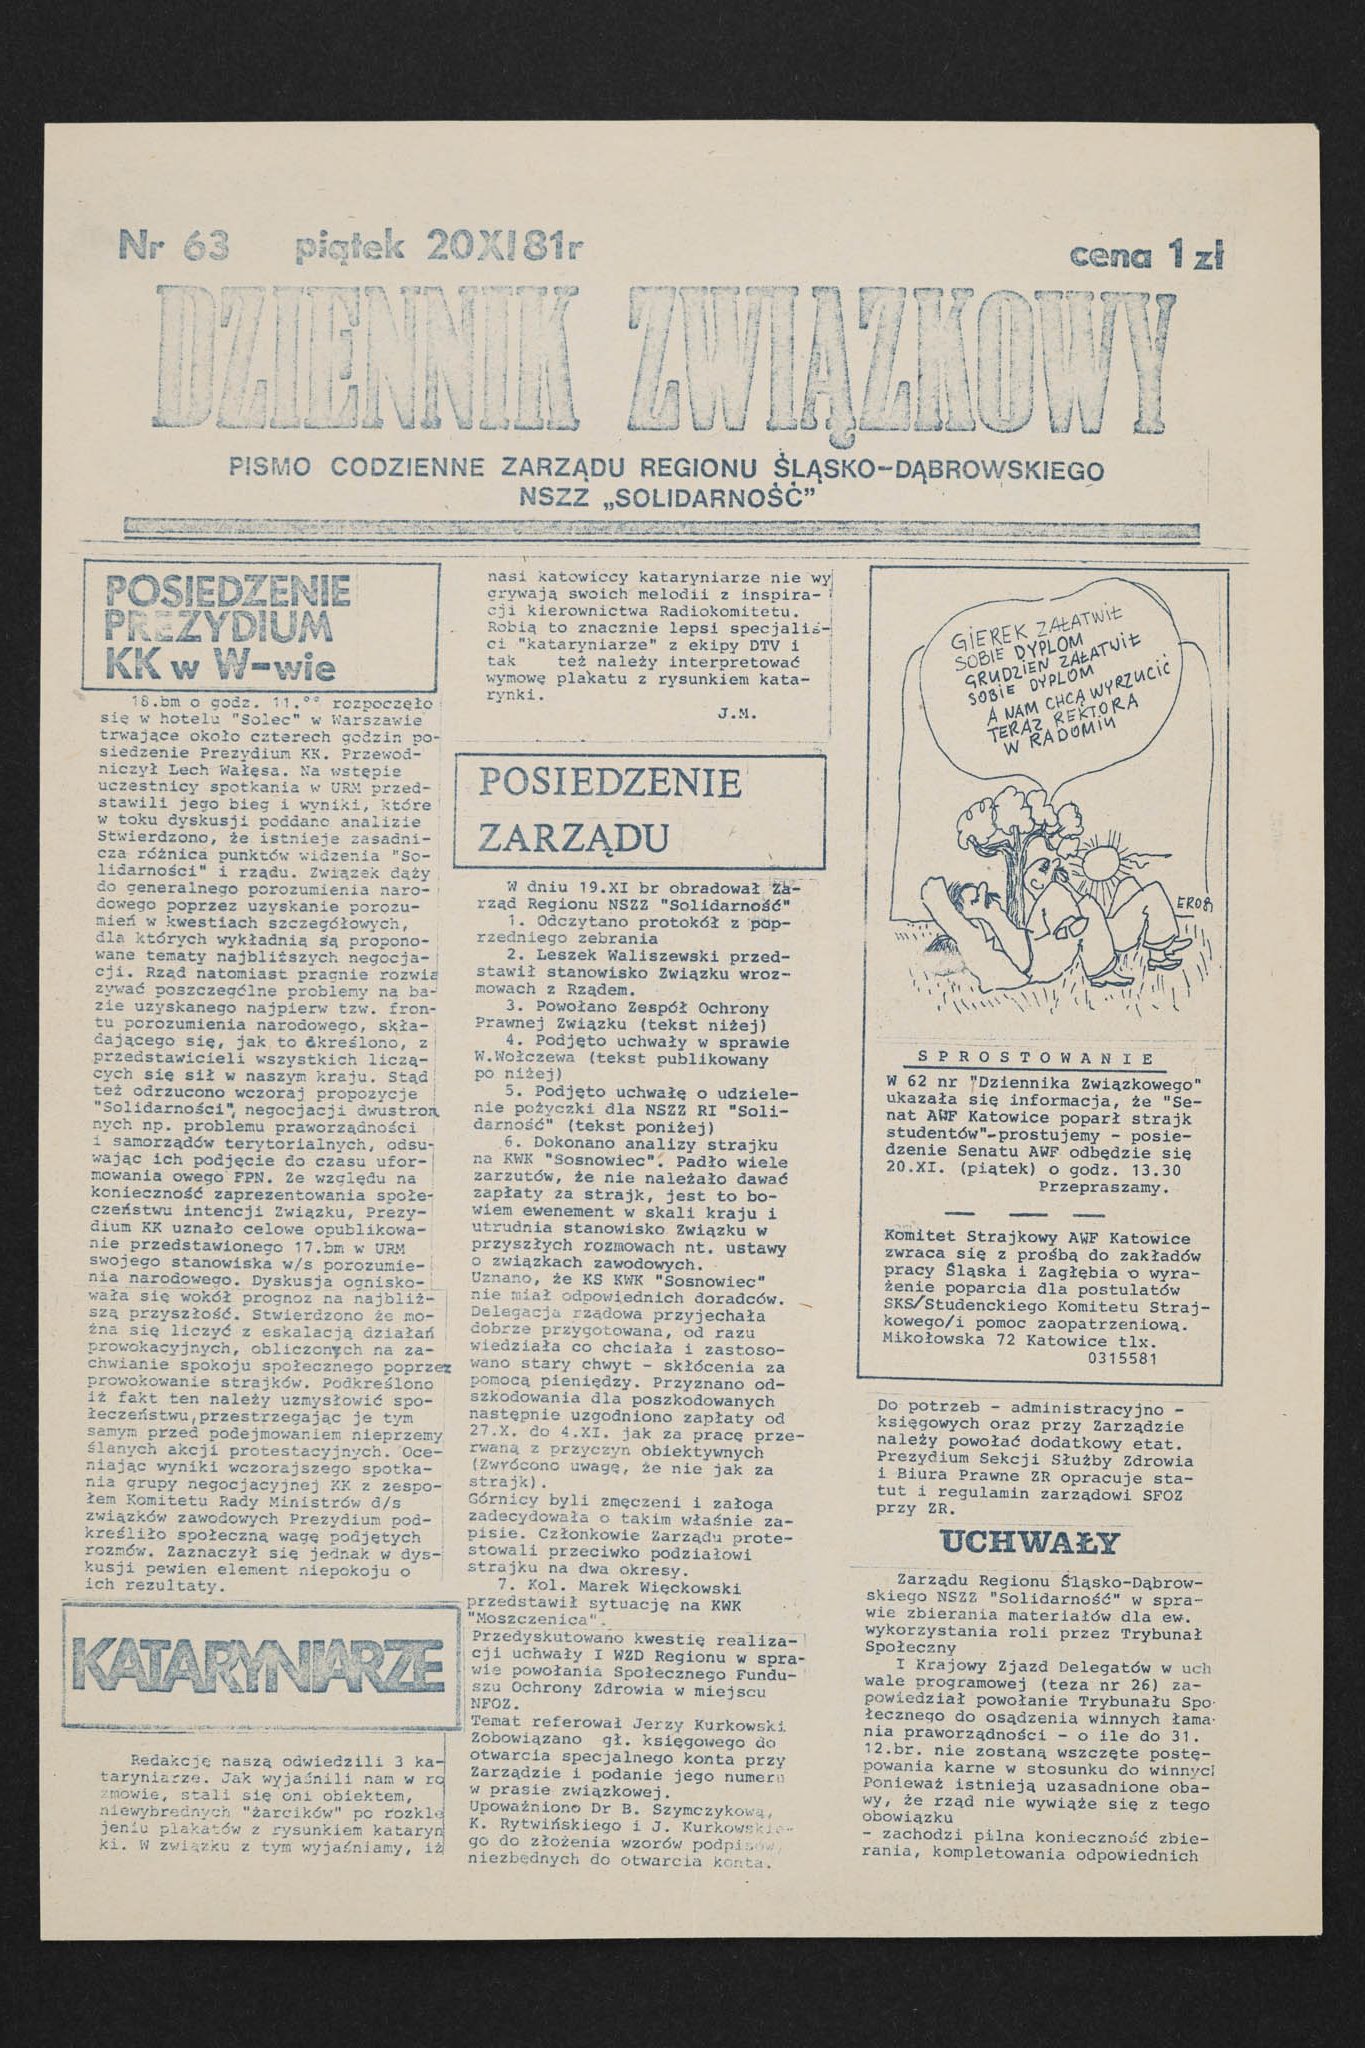 Dziennik związkowy nr 63 20.11.1981